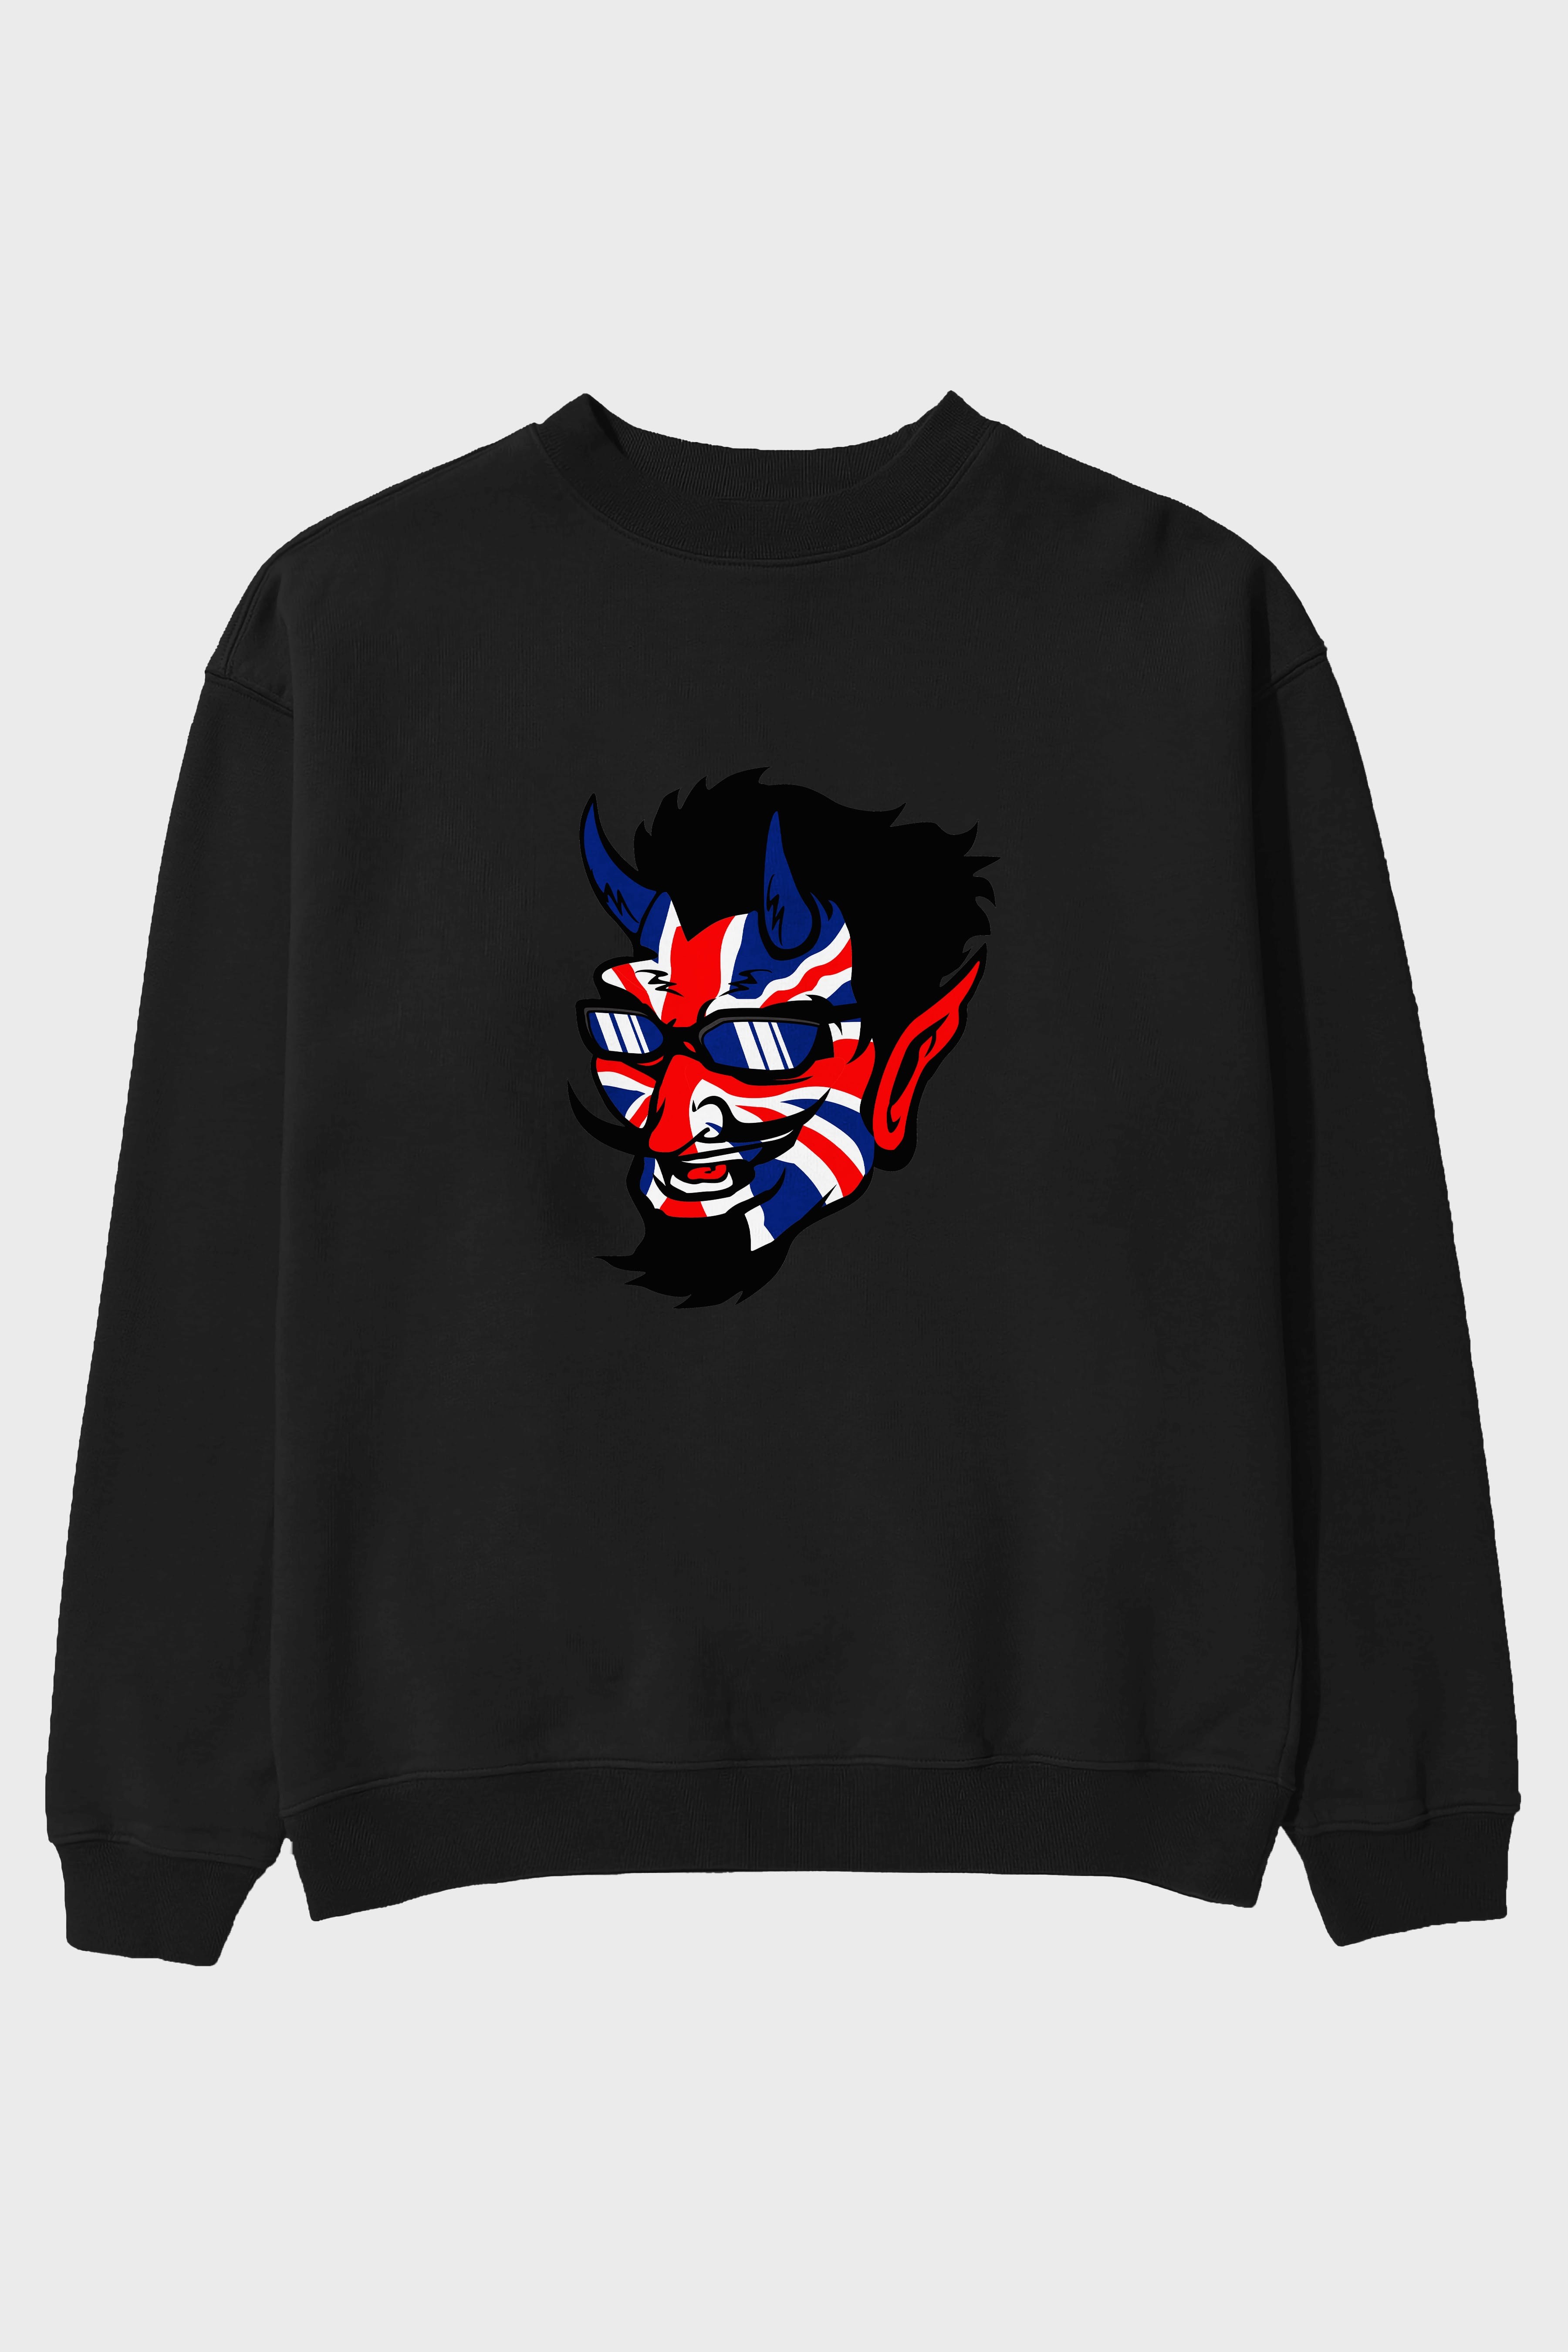 UK Devil Ön Baskılı Oversize Sweatshirt Erkek Kadın Unisex